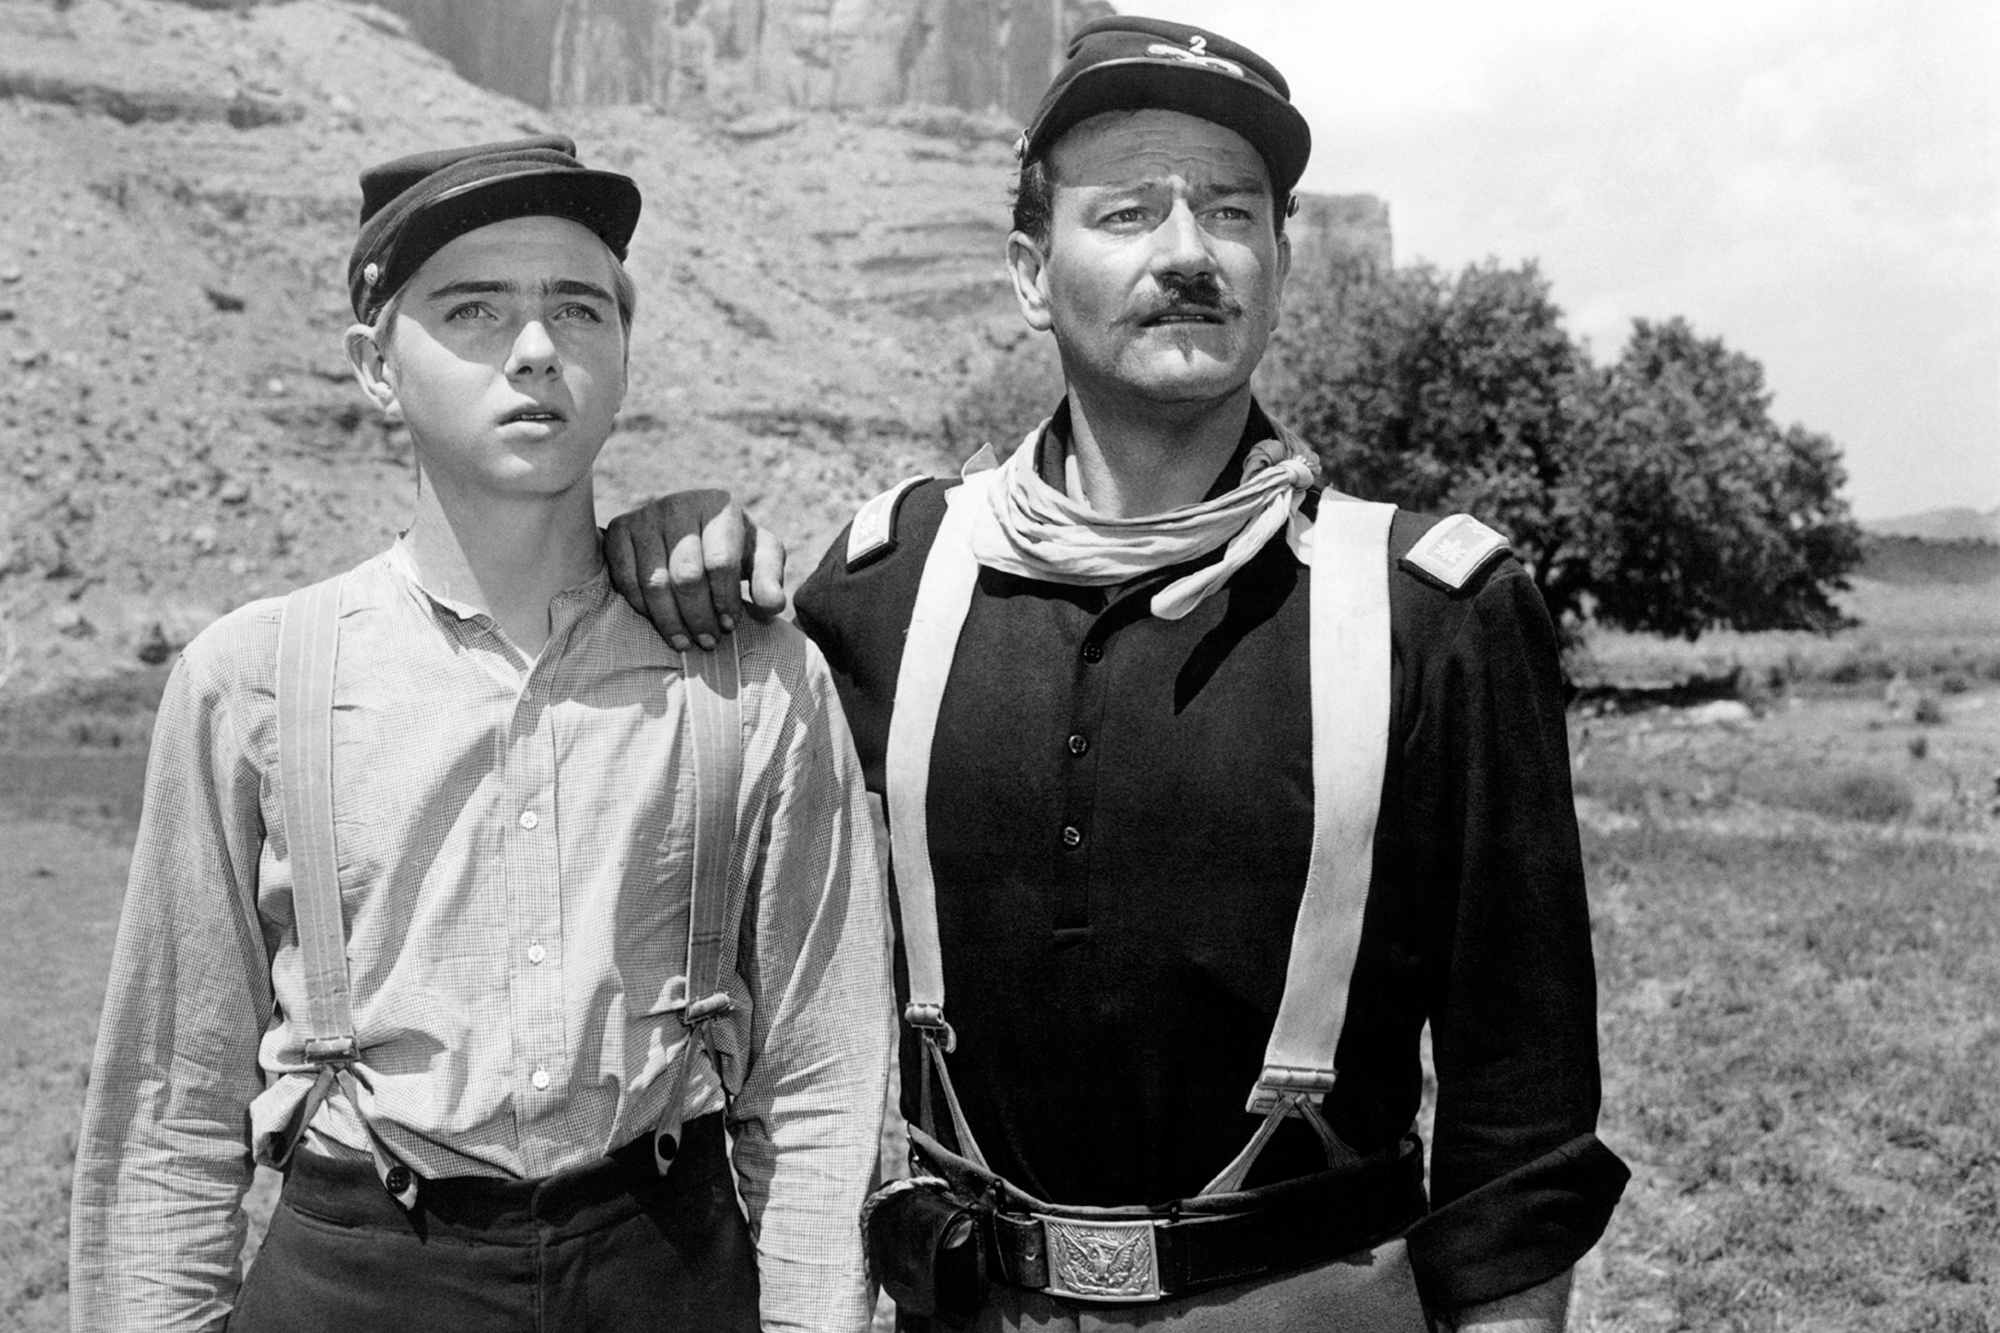 'Rio Grande' Claude Jarman Jr. as Trooper Jefferson 'Jeff' Yorke and John Wayne as Lt. Col. Kirby Yorke looking ahead in the desert. Wayne has his hand resting on Jarman Jr.'s shoulder.